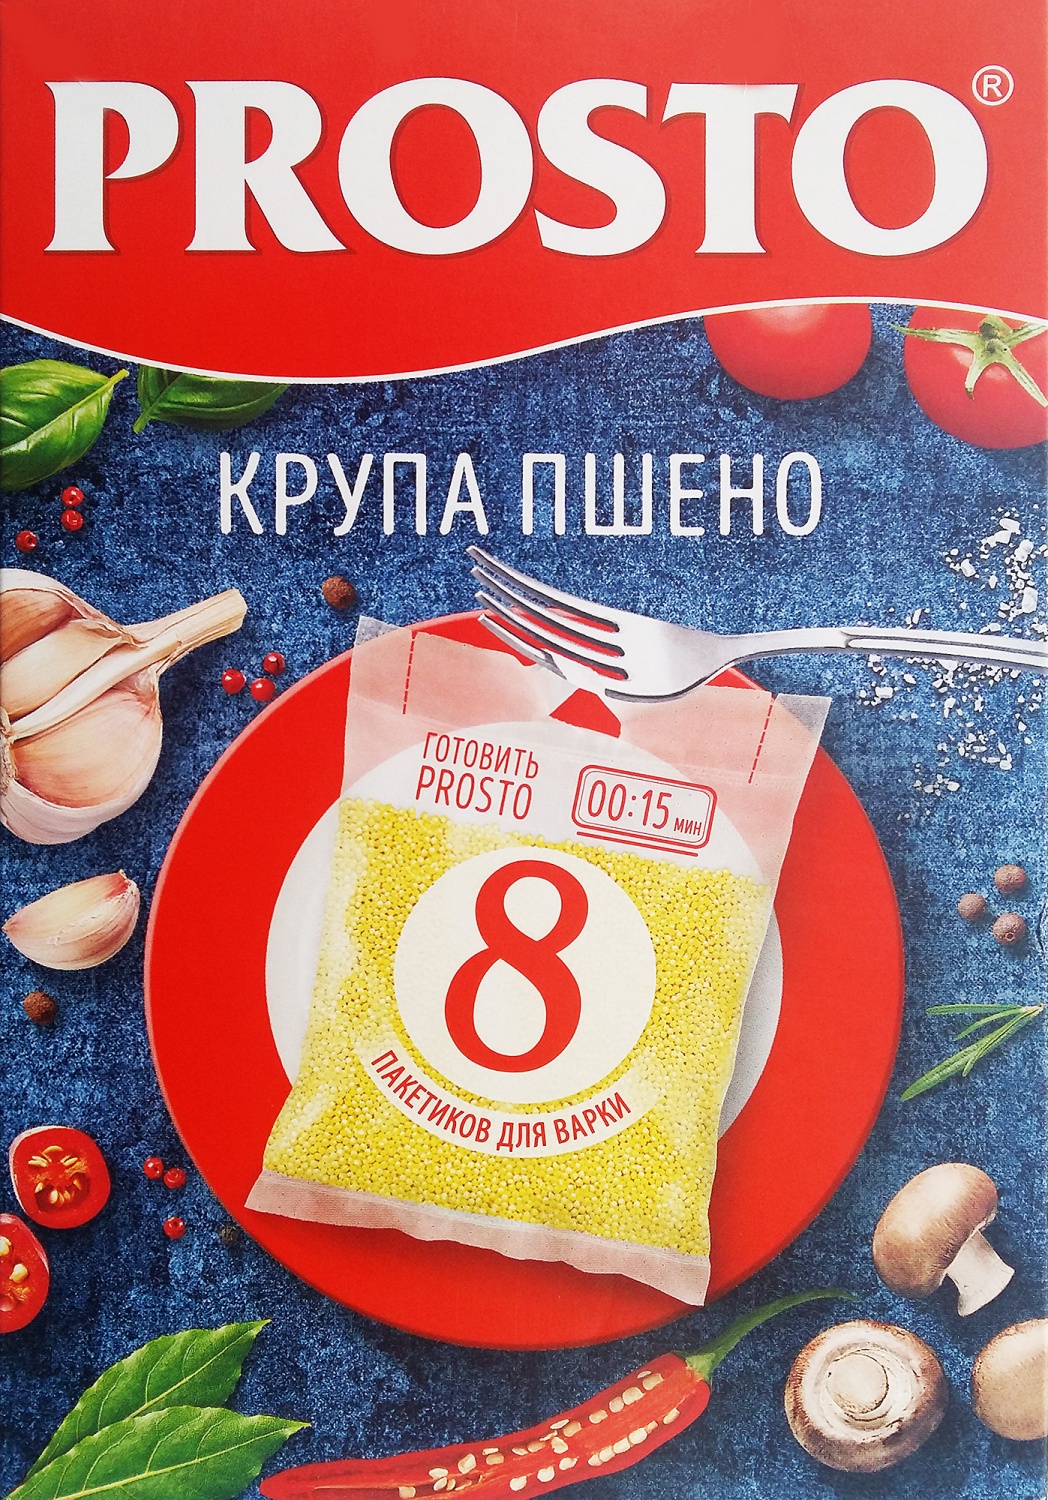 ТМ Хлибио . Органический хлеб | ВКонтакте